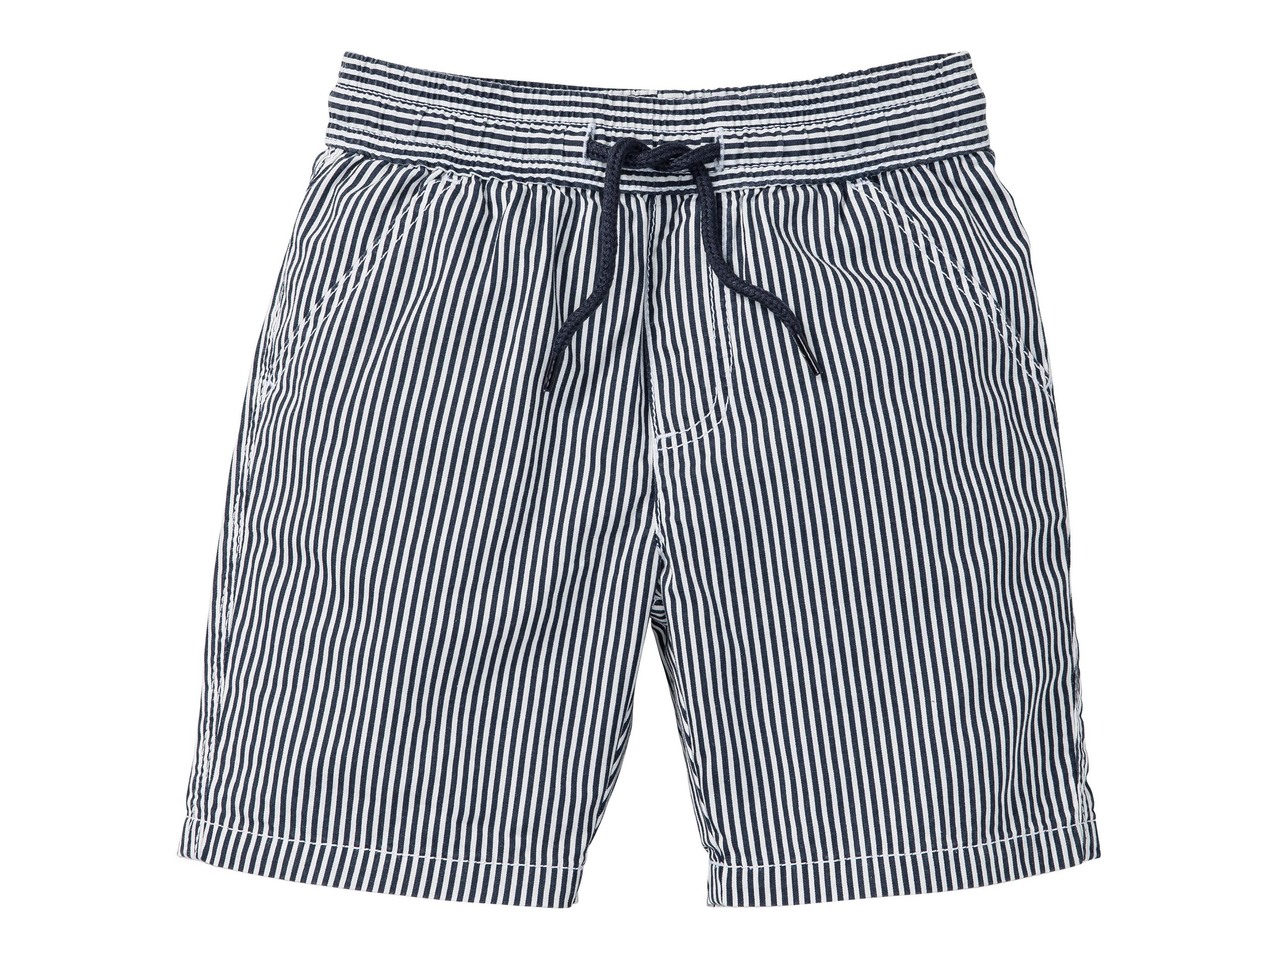 Boys' Bermudas Shorts, 2 pieces